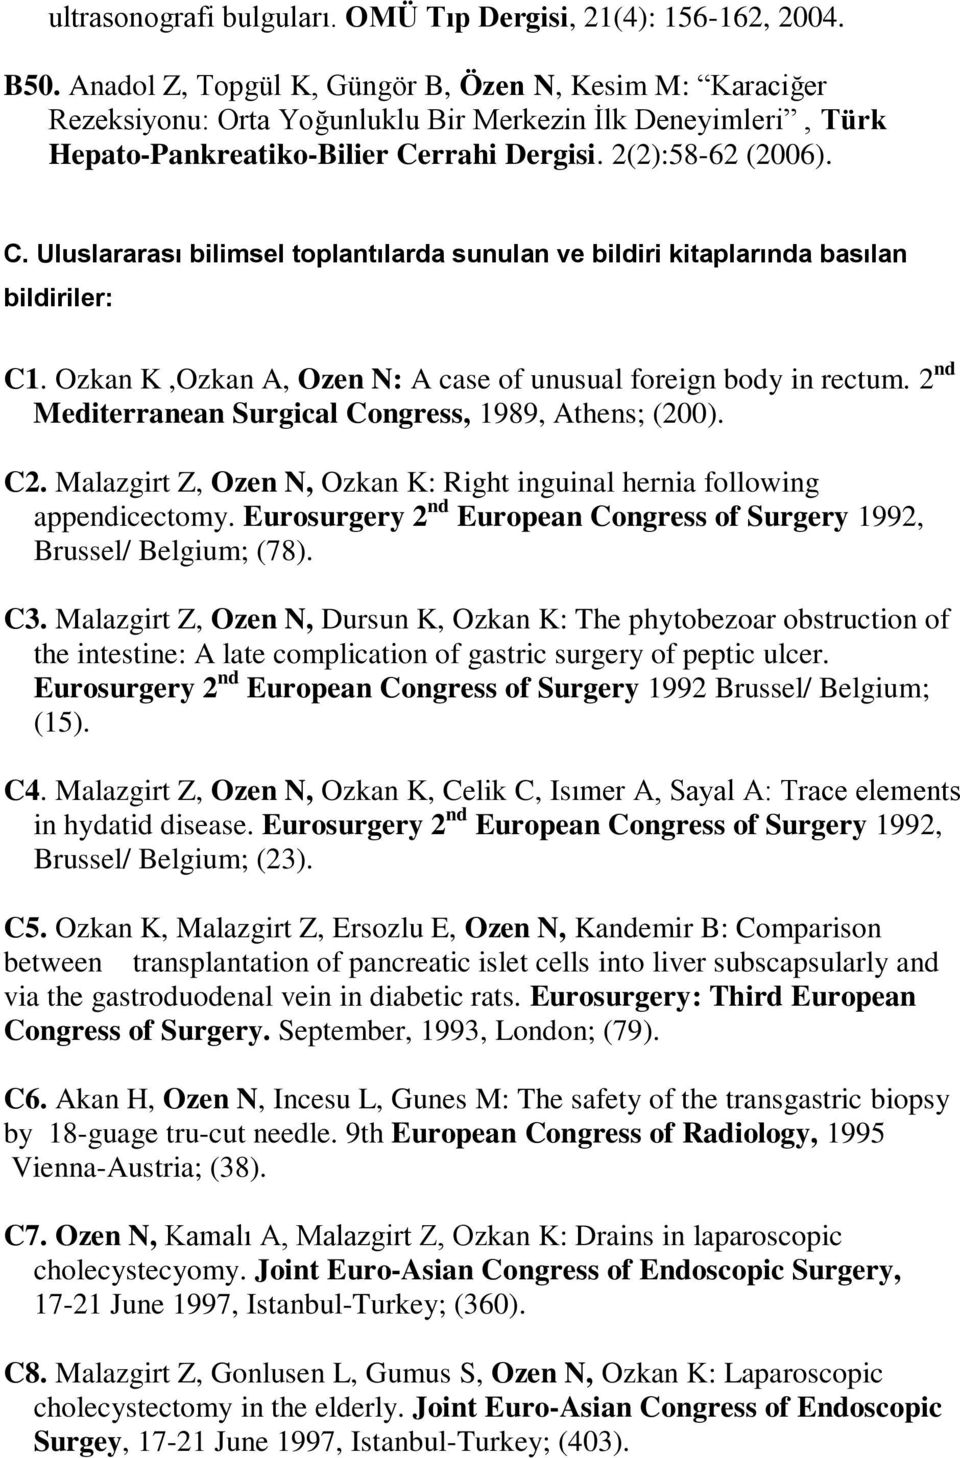 rrahi Dergisi. 2(2):58-62 (2006). C. Uluslararası bilimsel toplantılarda sunulan ve bildiri kitaplarında basılan bildiriler: C1. Ozkan K,Ozkan A, Ozen N: A case of unusual foreign body in rectum.